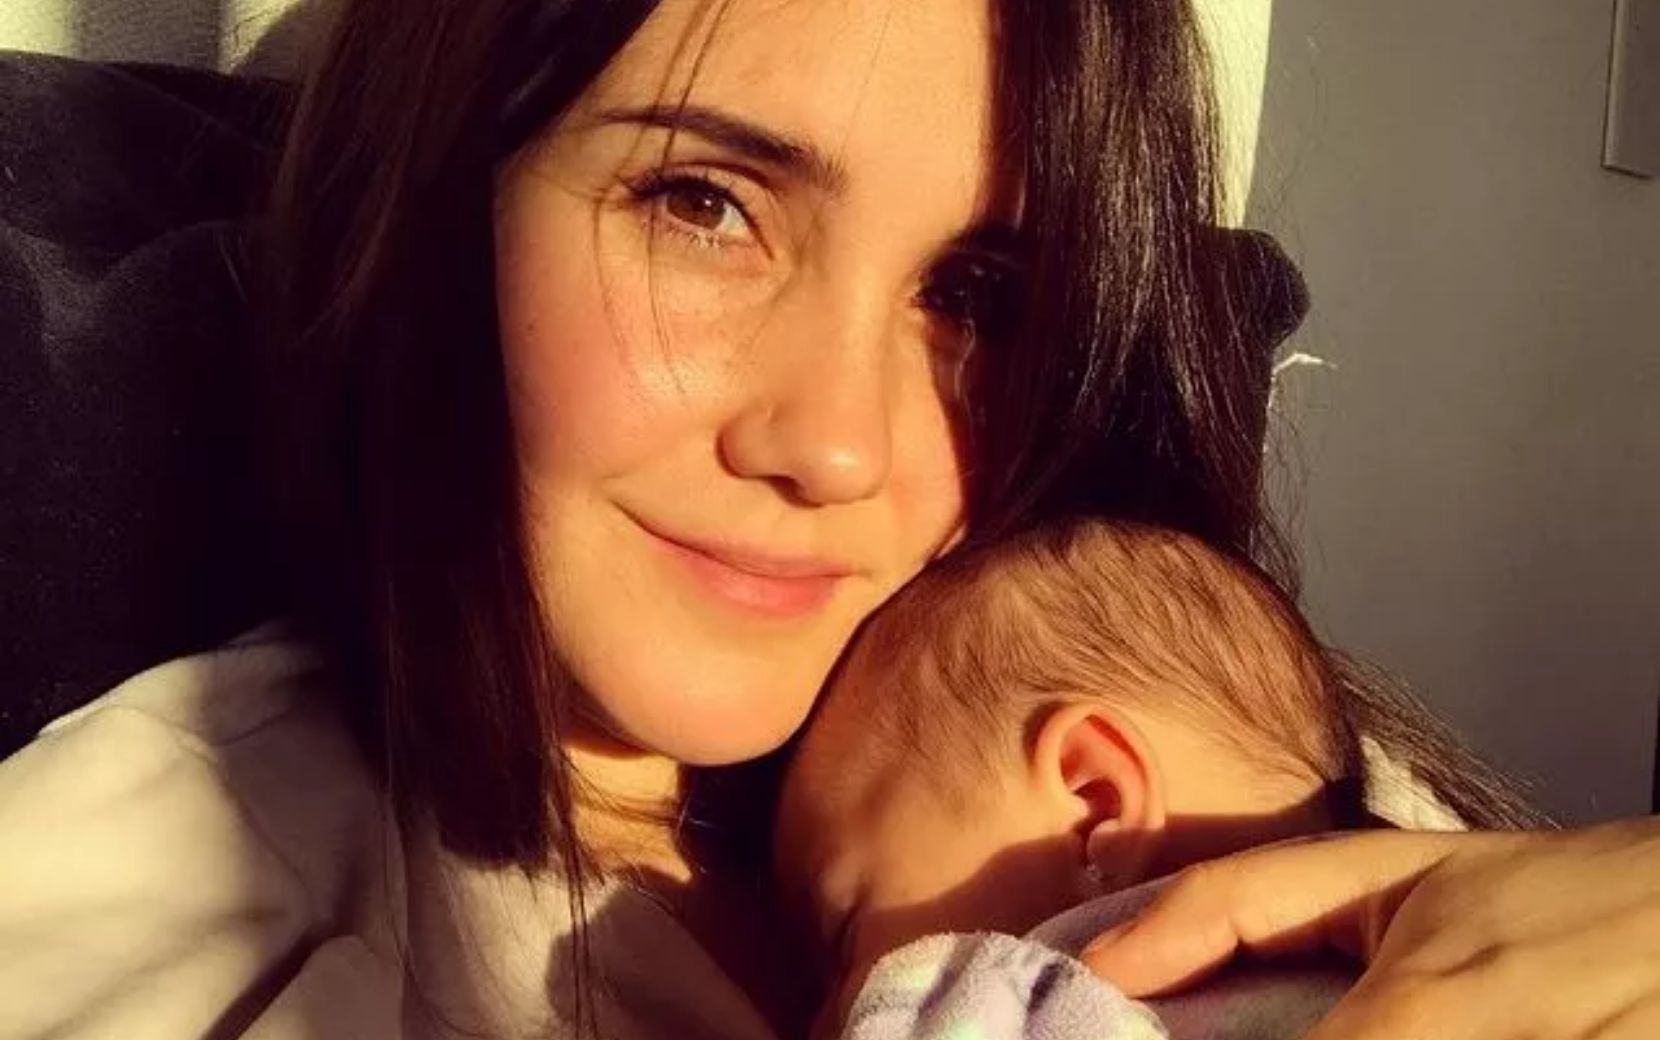 Dulce Maria compartilha clique com a filha e faz desabafo sobre maternidade: "Exausta"